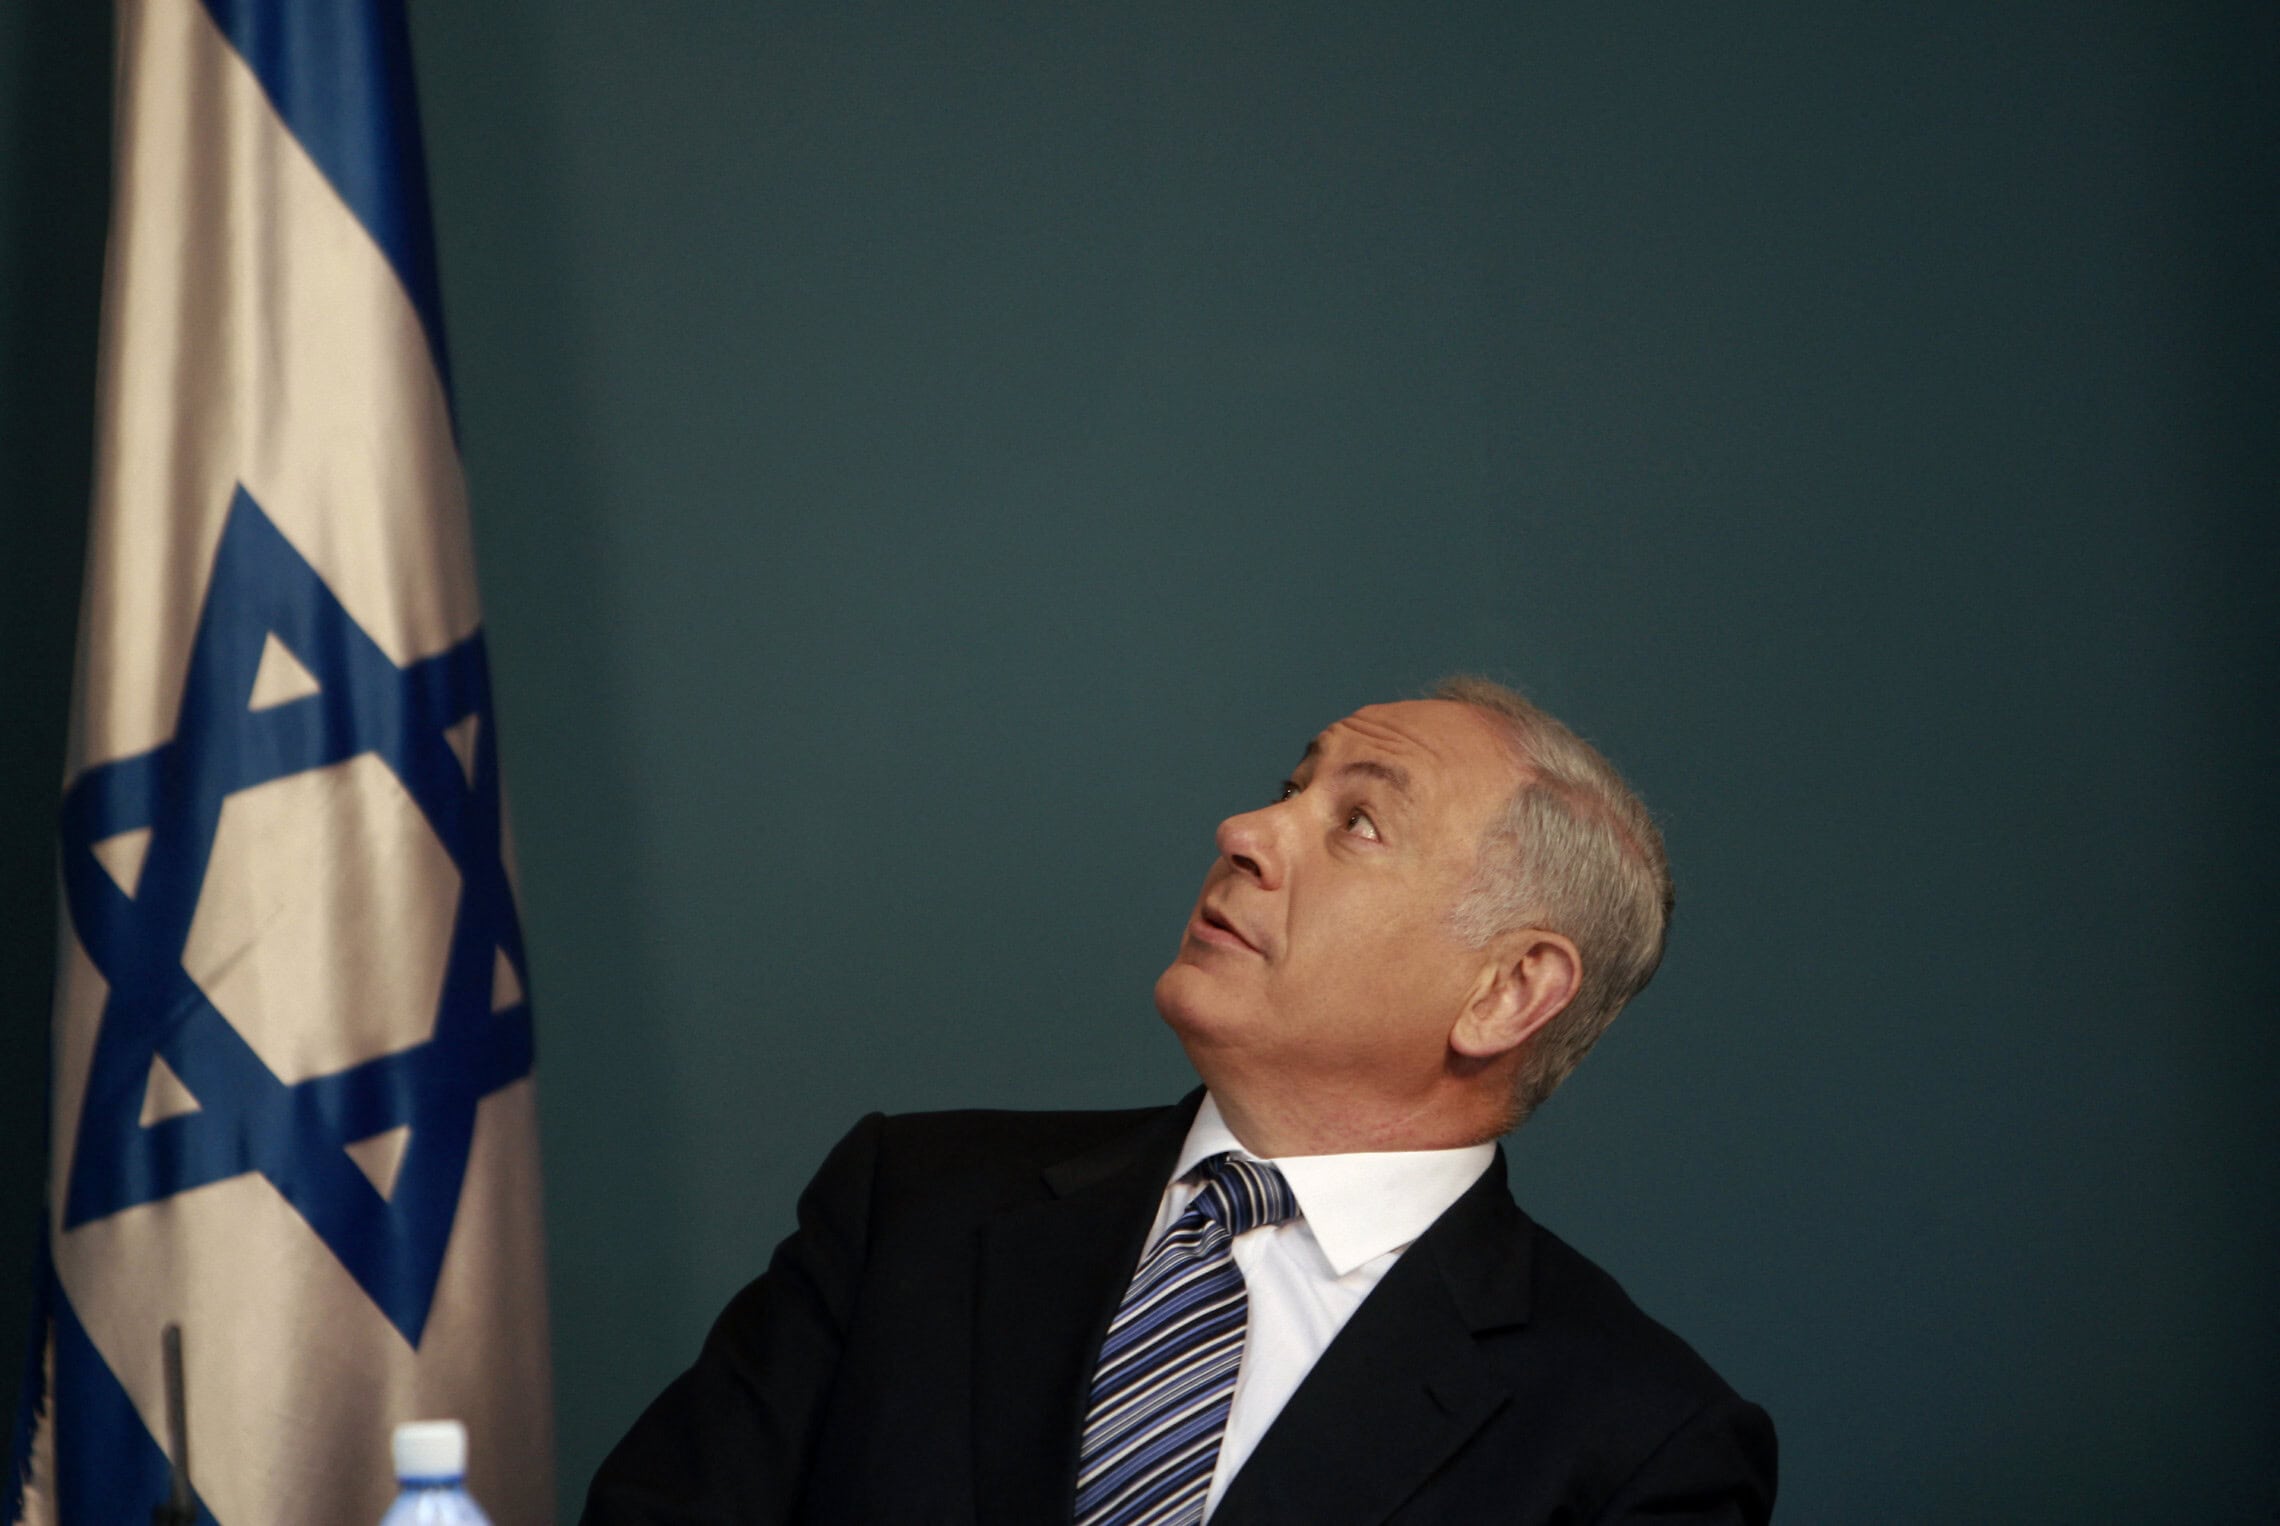 ראש הממשלה בנימין נתניהו במסיבת עיתונאים בלשכתו בירושלים, 23 באפריל 2009 (צילום: AMMAR AWAD / POOL / AFP)